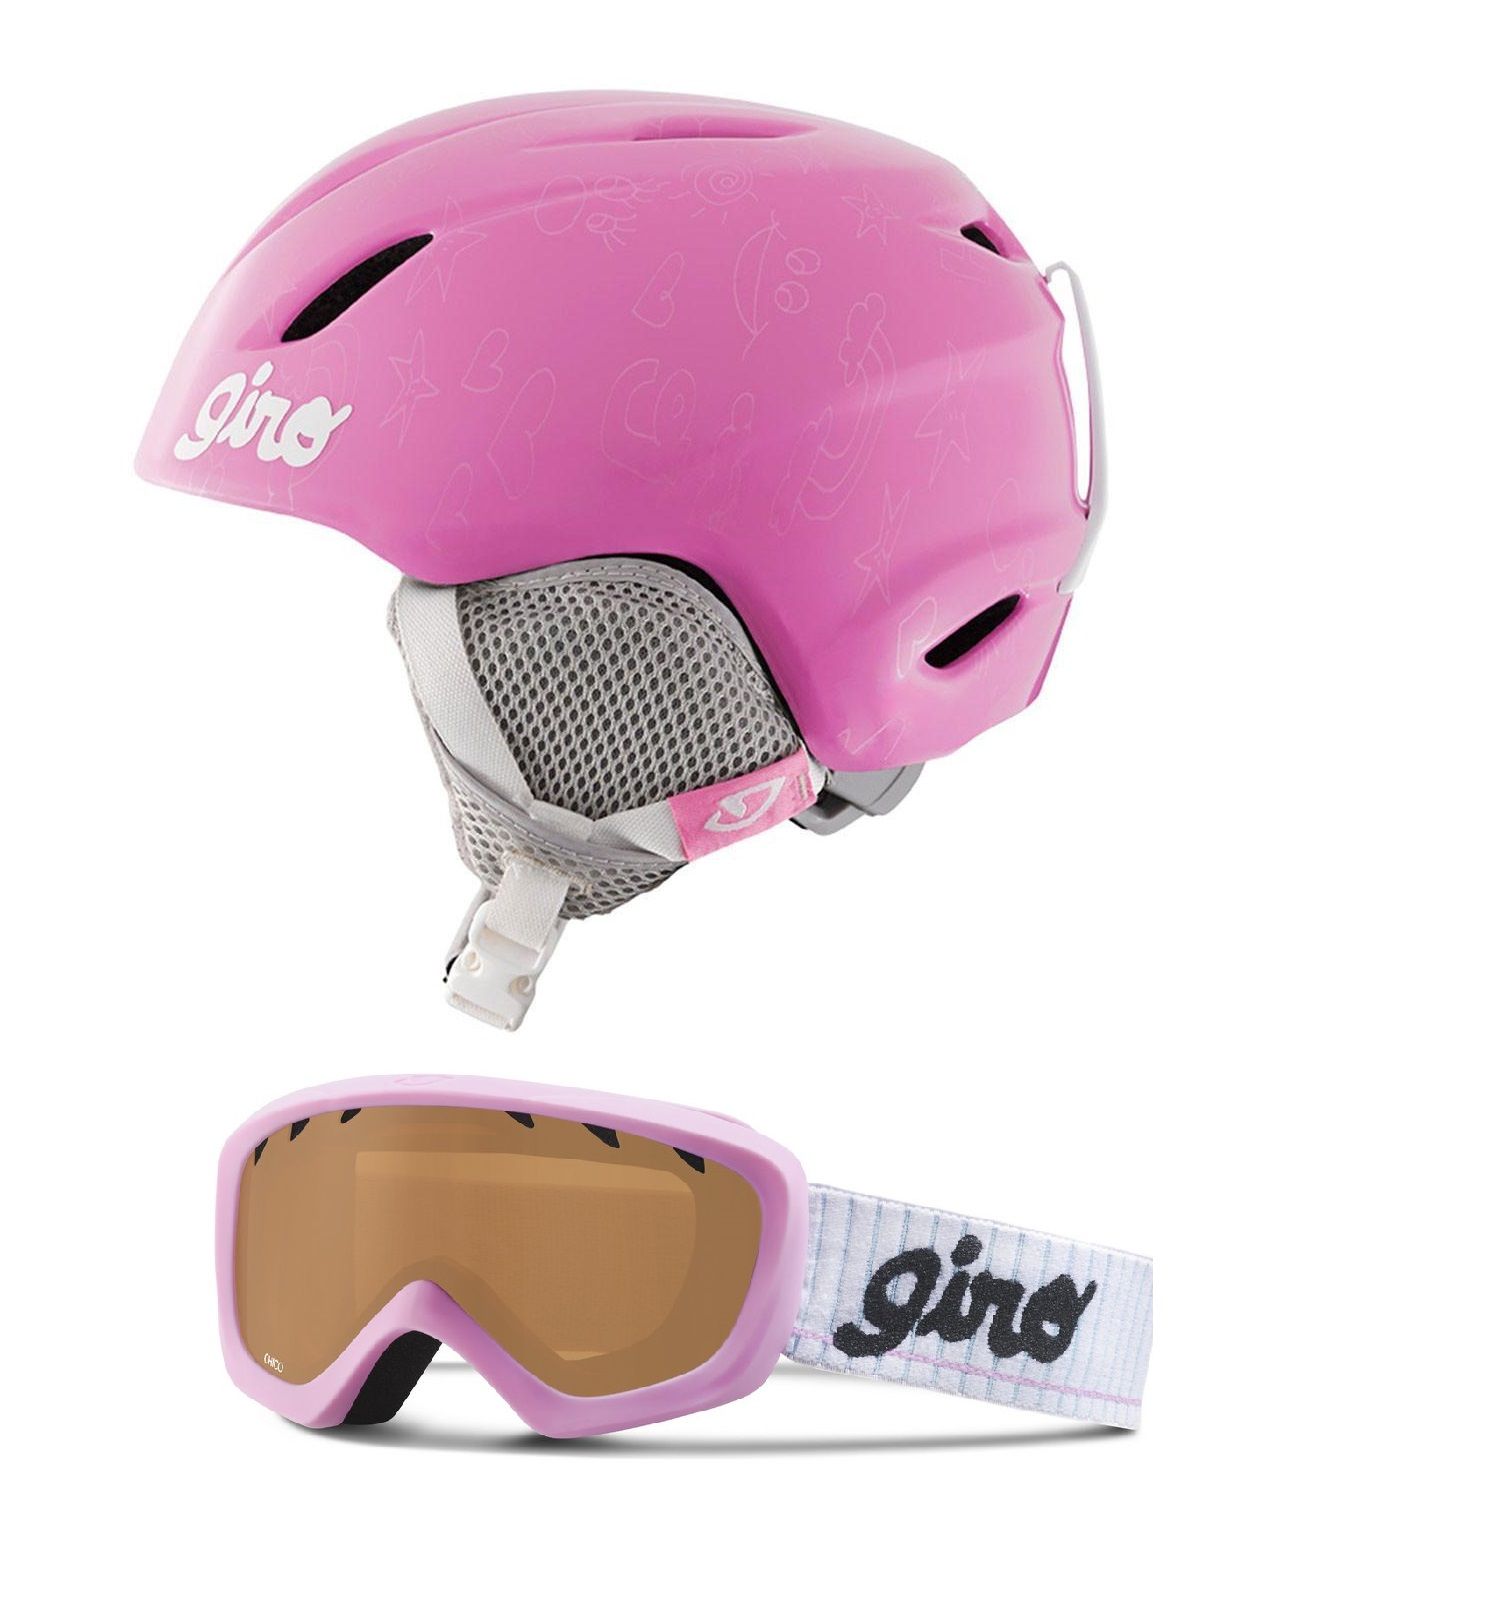 Горнолыжный детский шлем Giro Launch + маска Giro Chico розовый (launch-pink) XS 48.5-52см